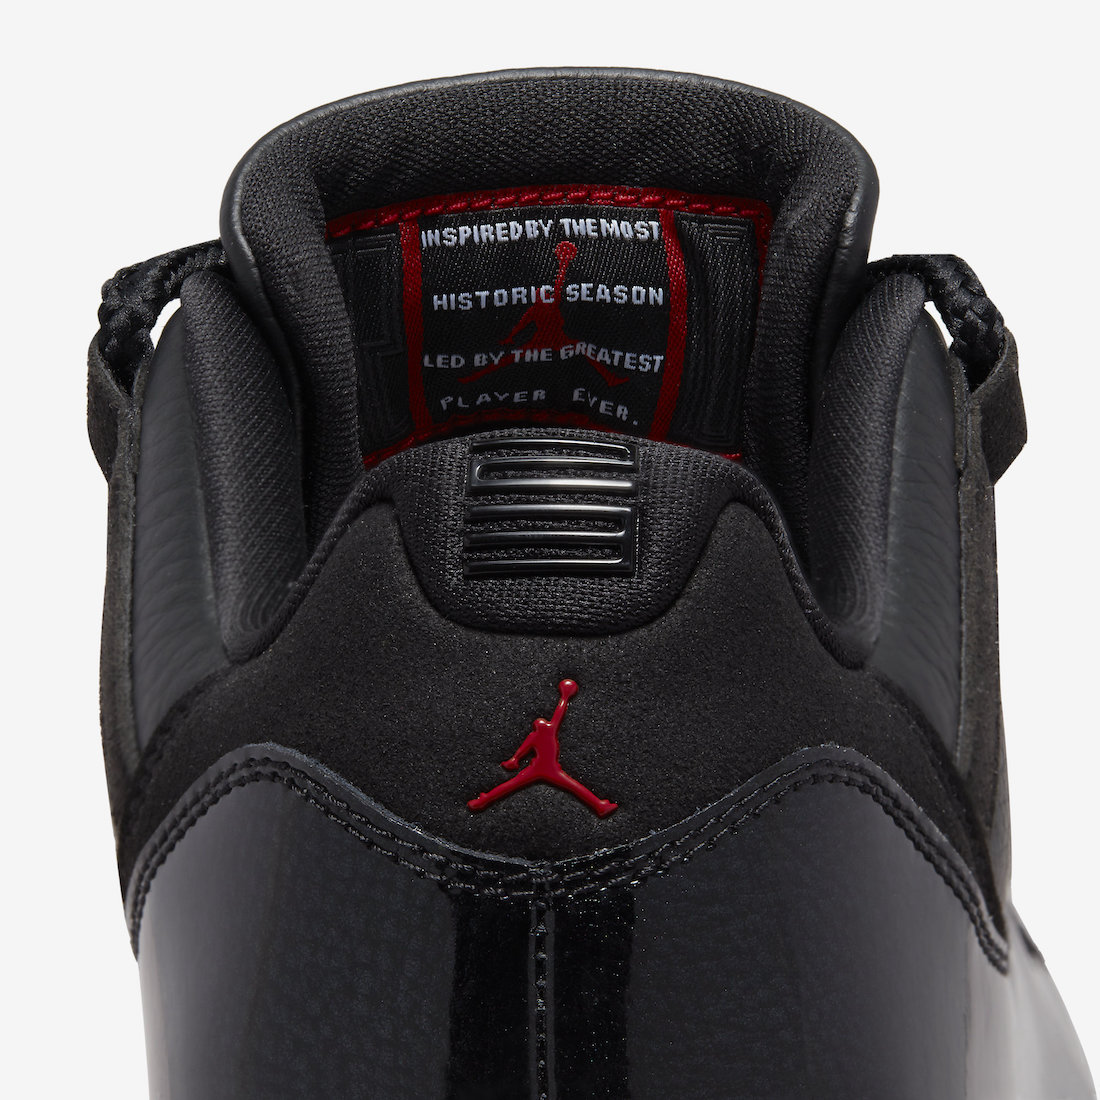 Official Look At The Air Jordan 11 Retro Low “72-10”